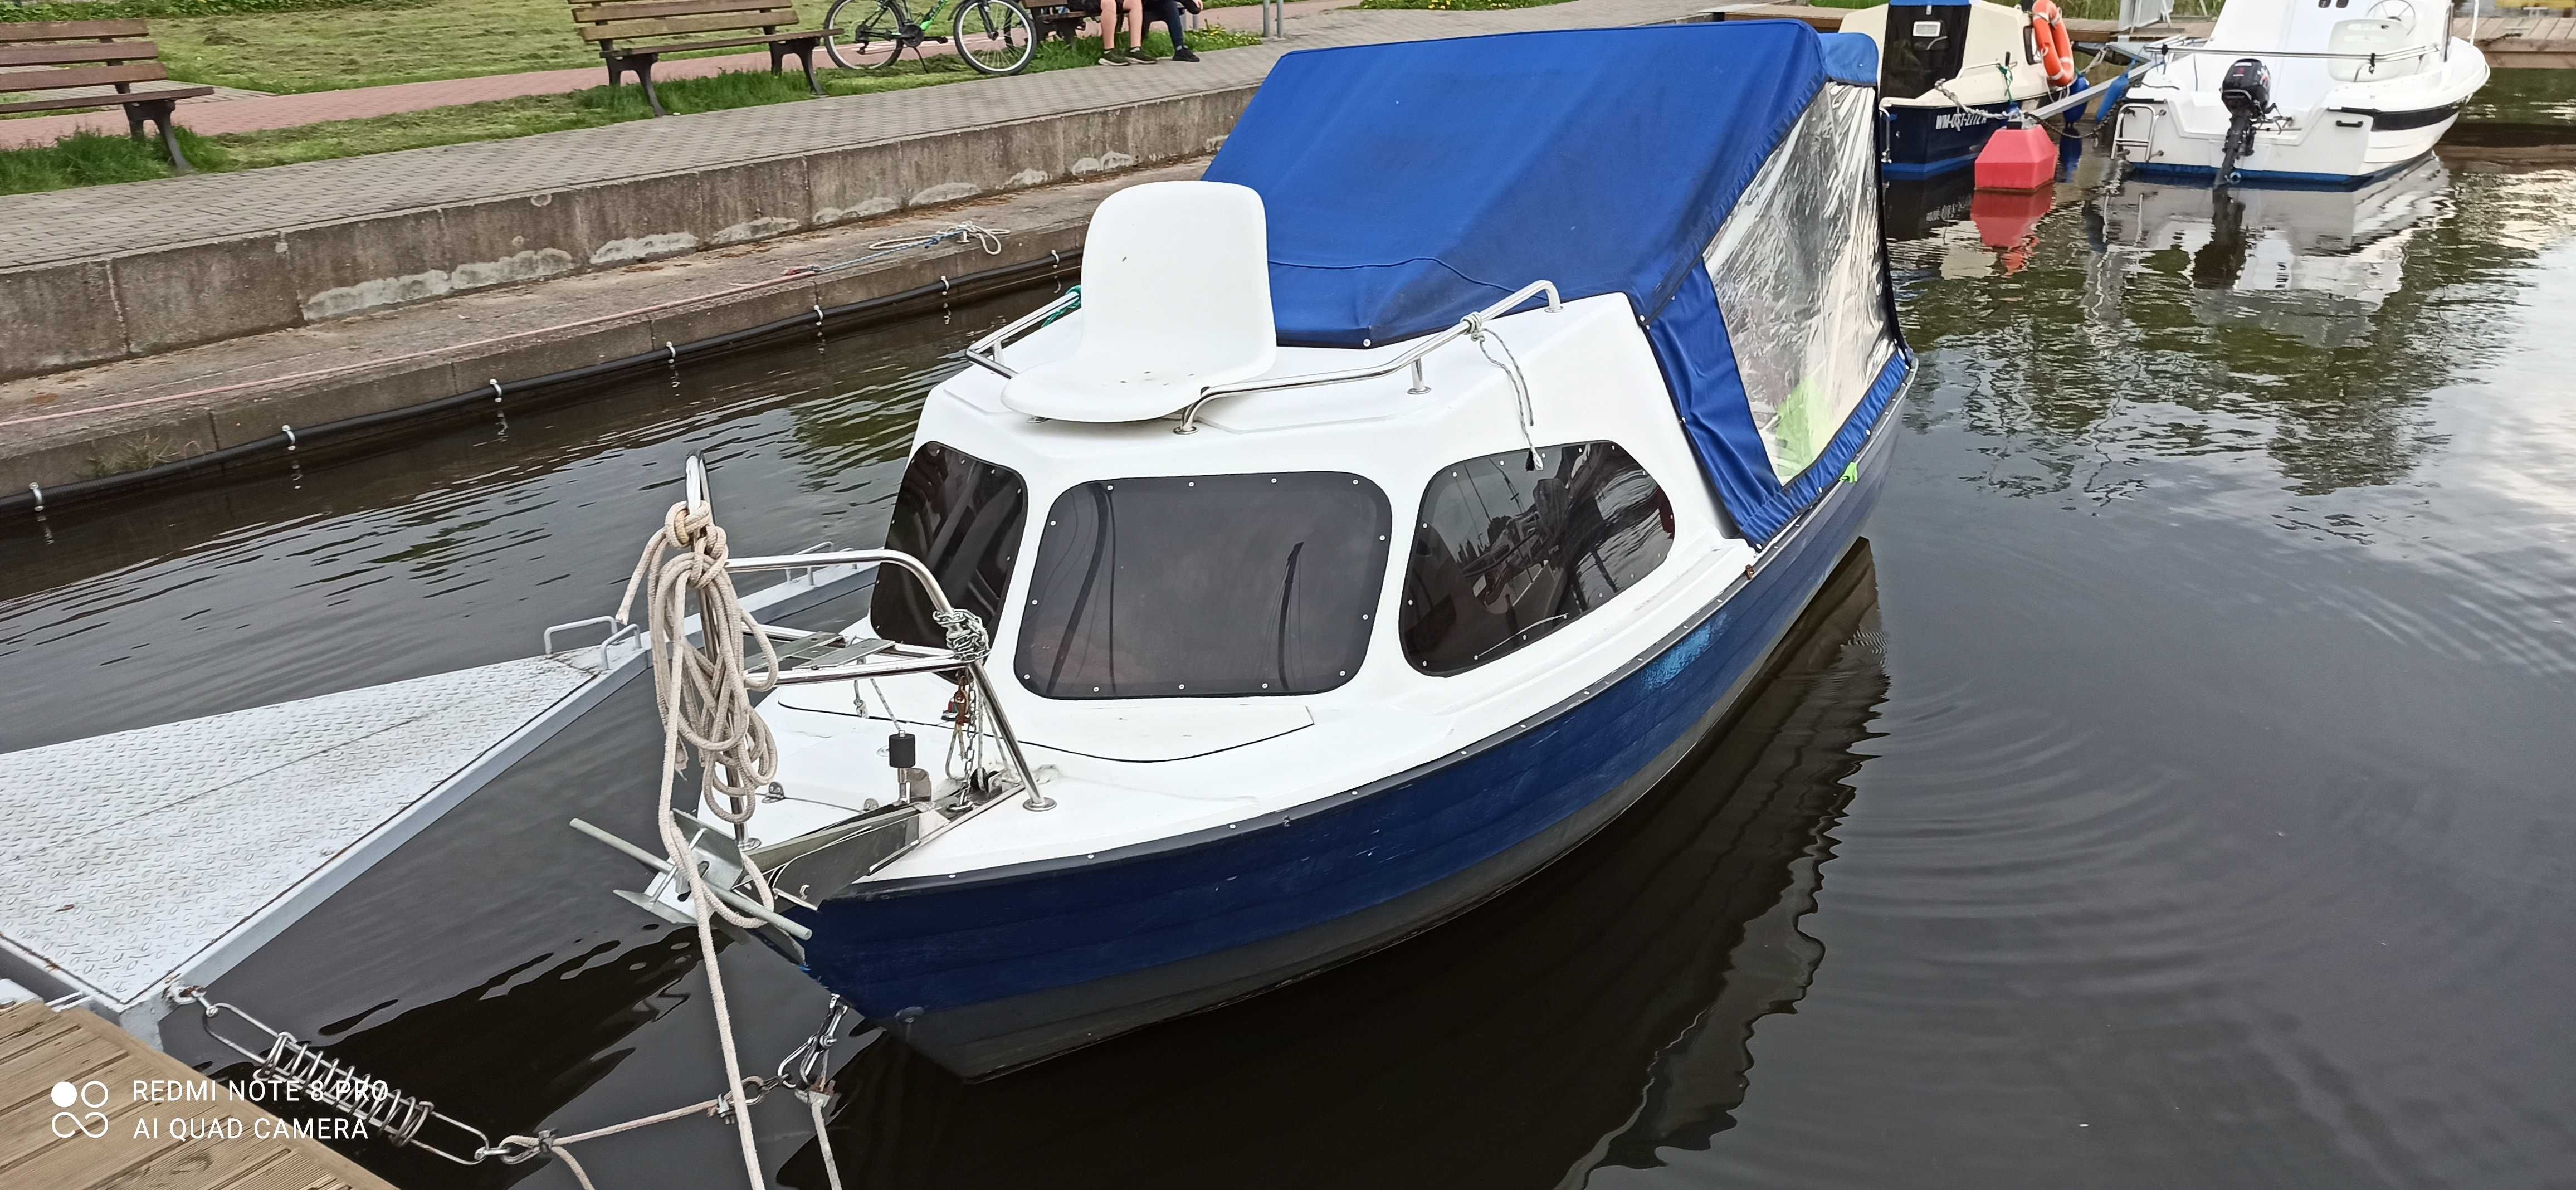 Jacht Motorowy Kreszczent